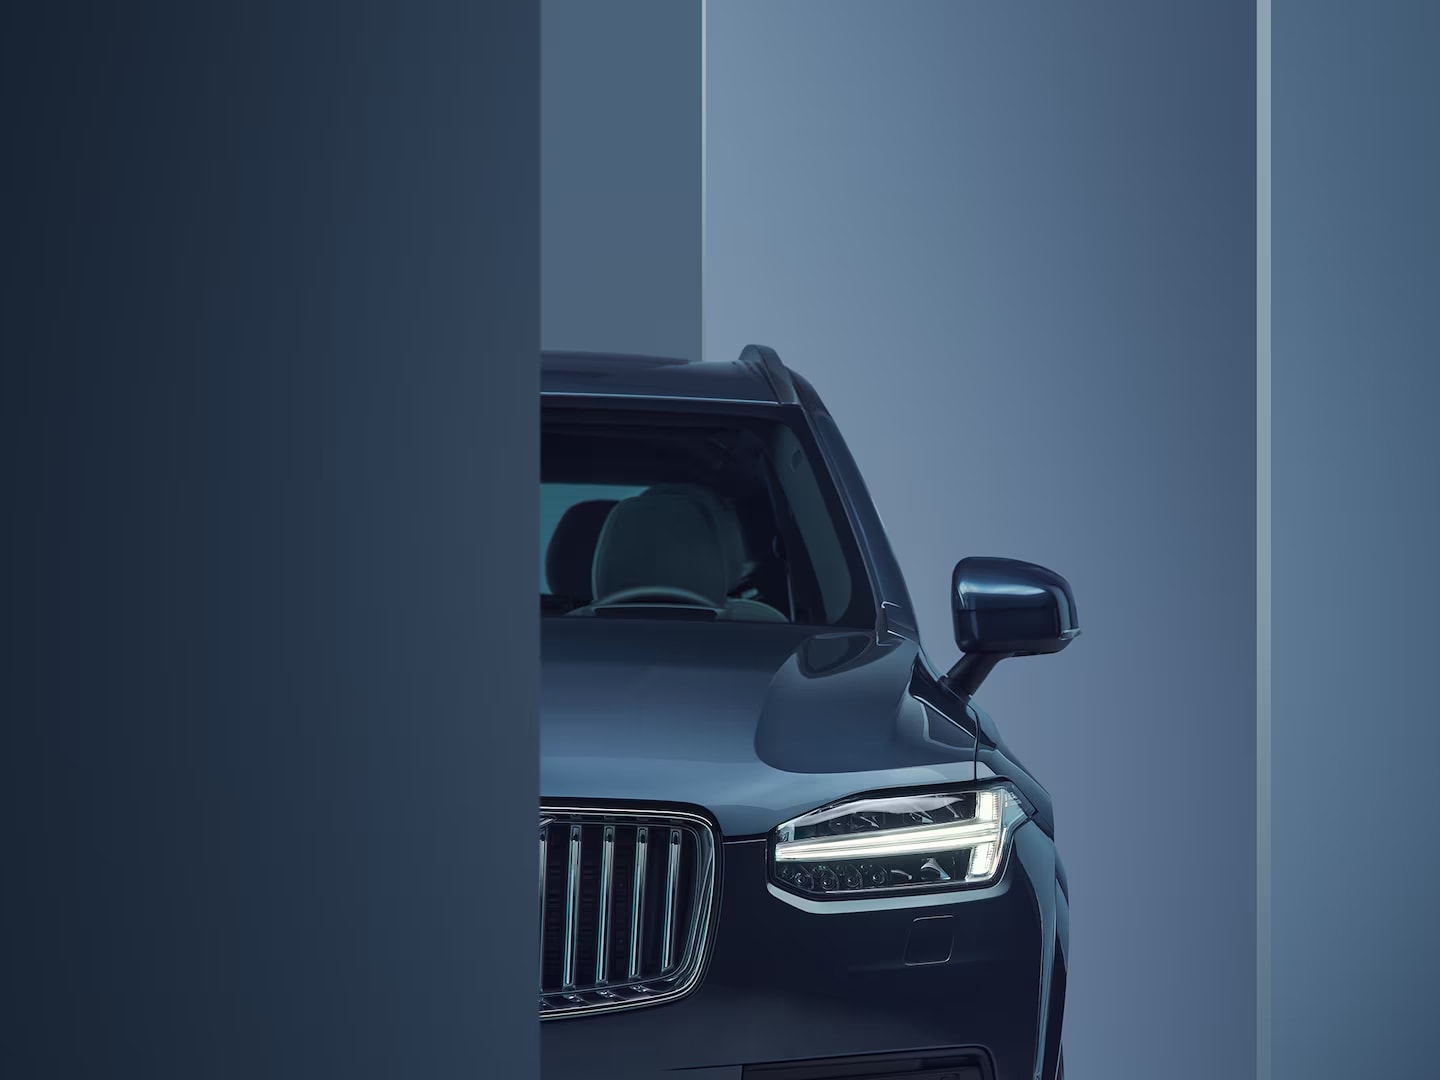 Dettaglio del design dei fari della Volvo XC90 Plug-in Hybrid.